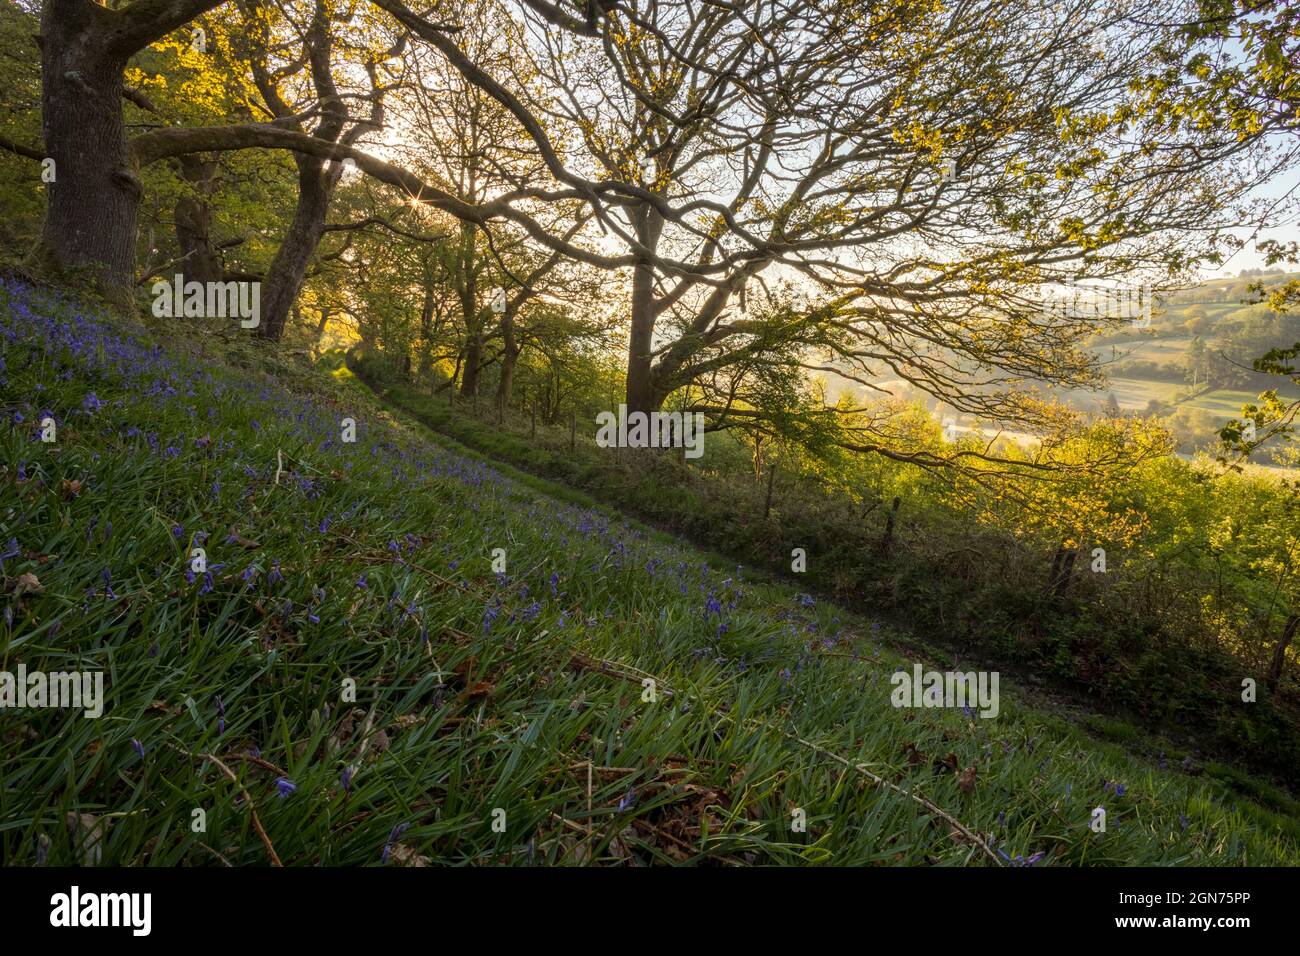 Las campánulas azules (Hyacinthoides non-scripta) floración en un bosque de robles. Powys, Gales. De mayo. Foto de stock